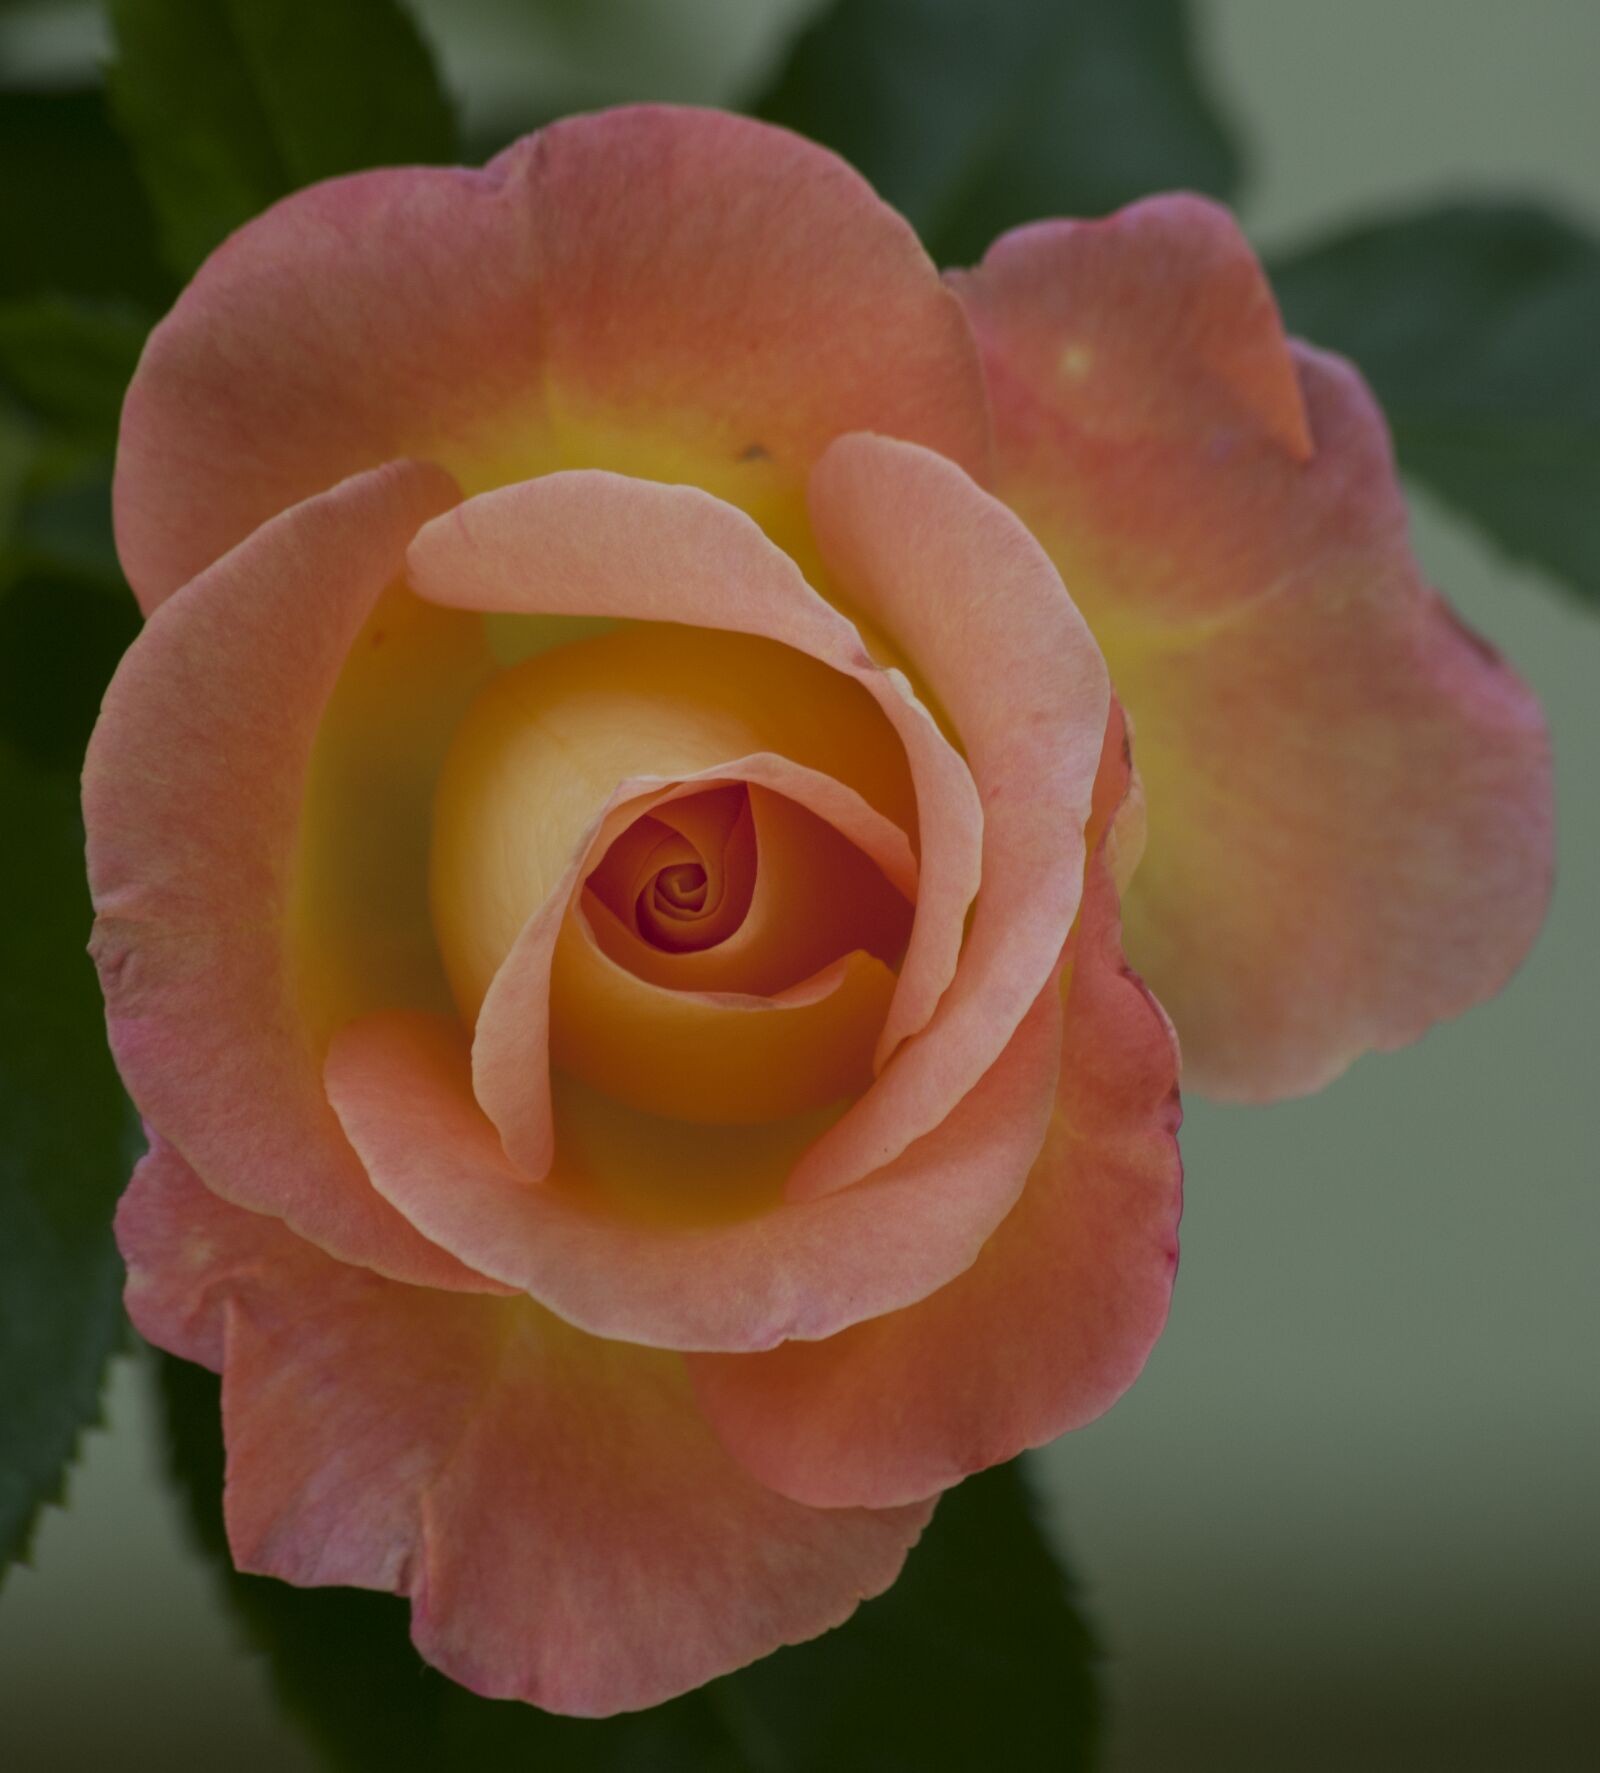 Nikon D60 sample photo. Pinky, rose photography